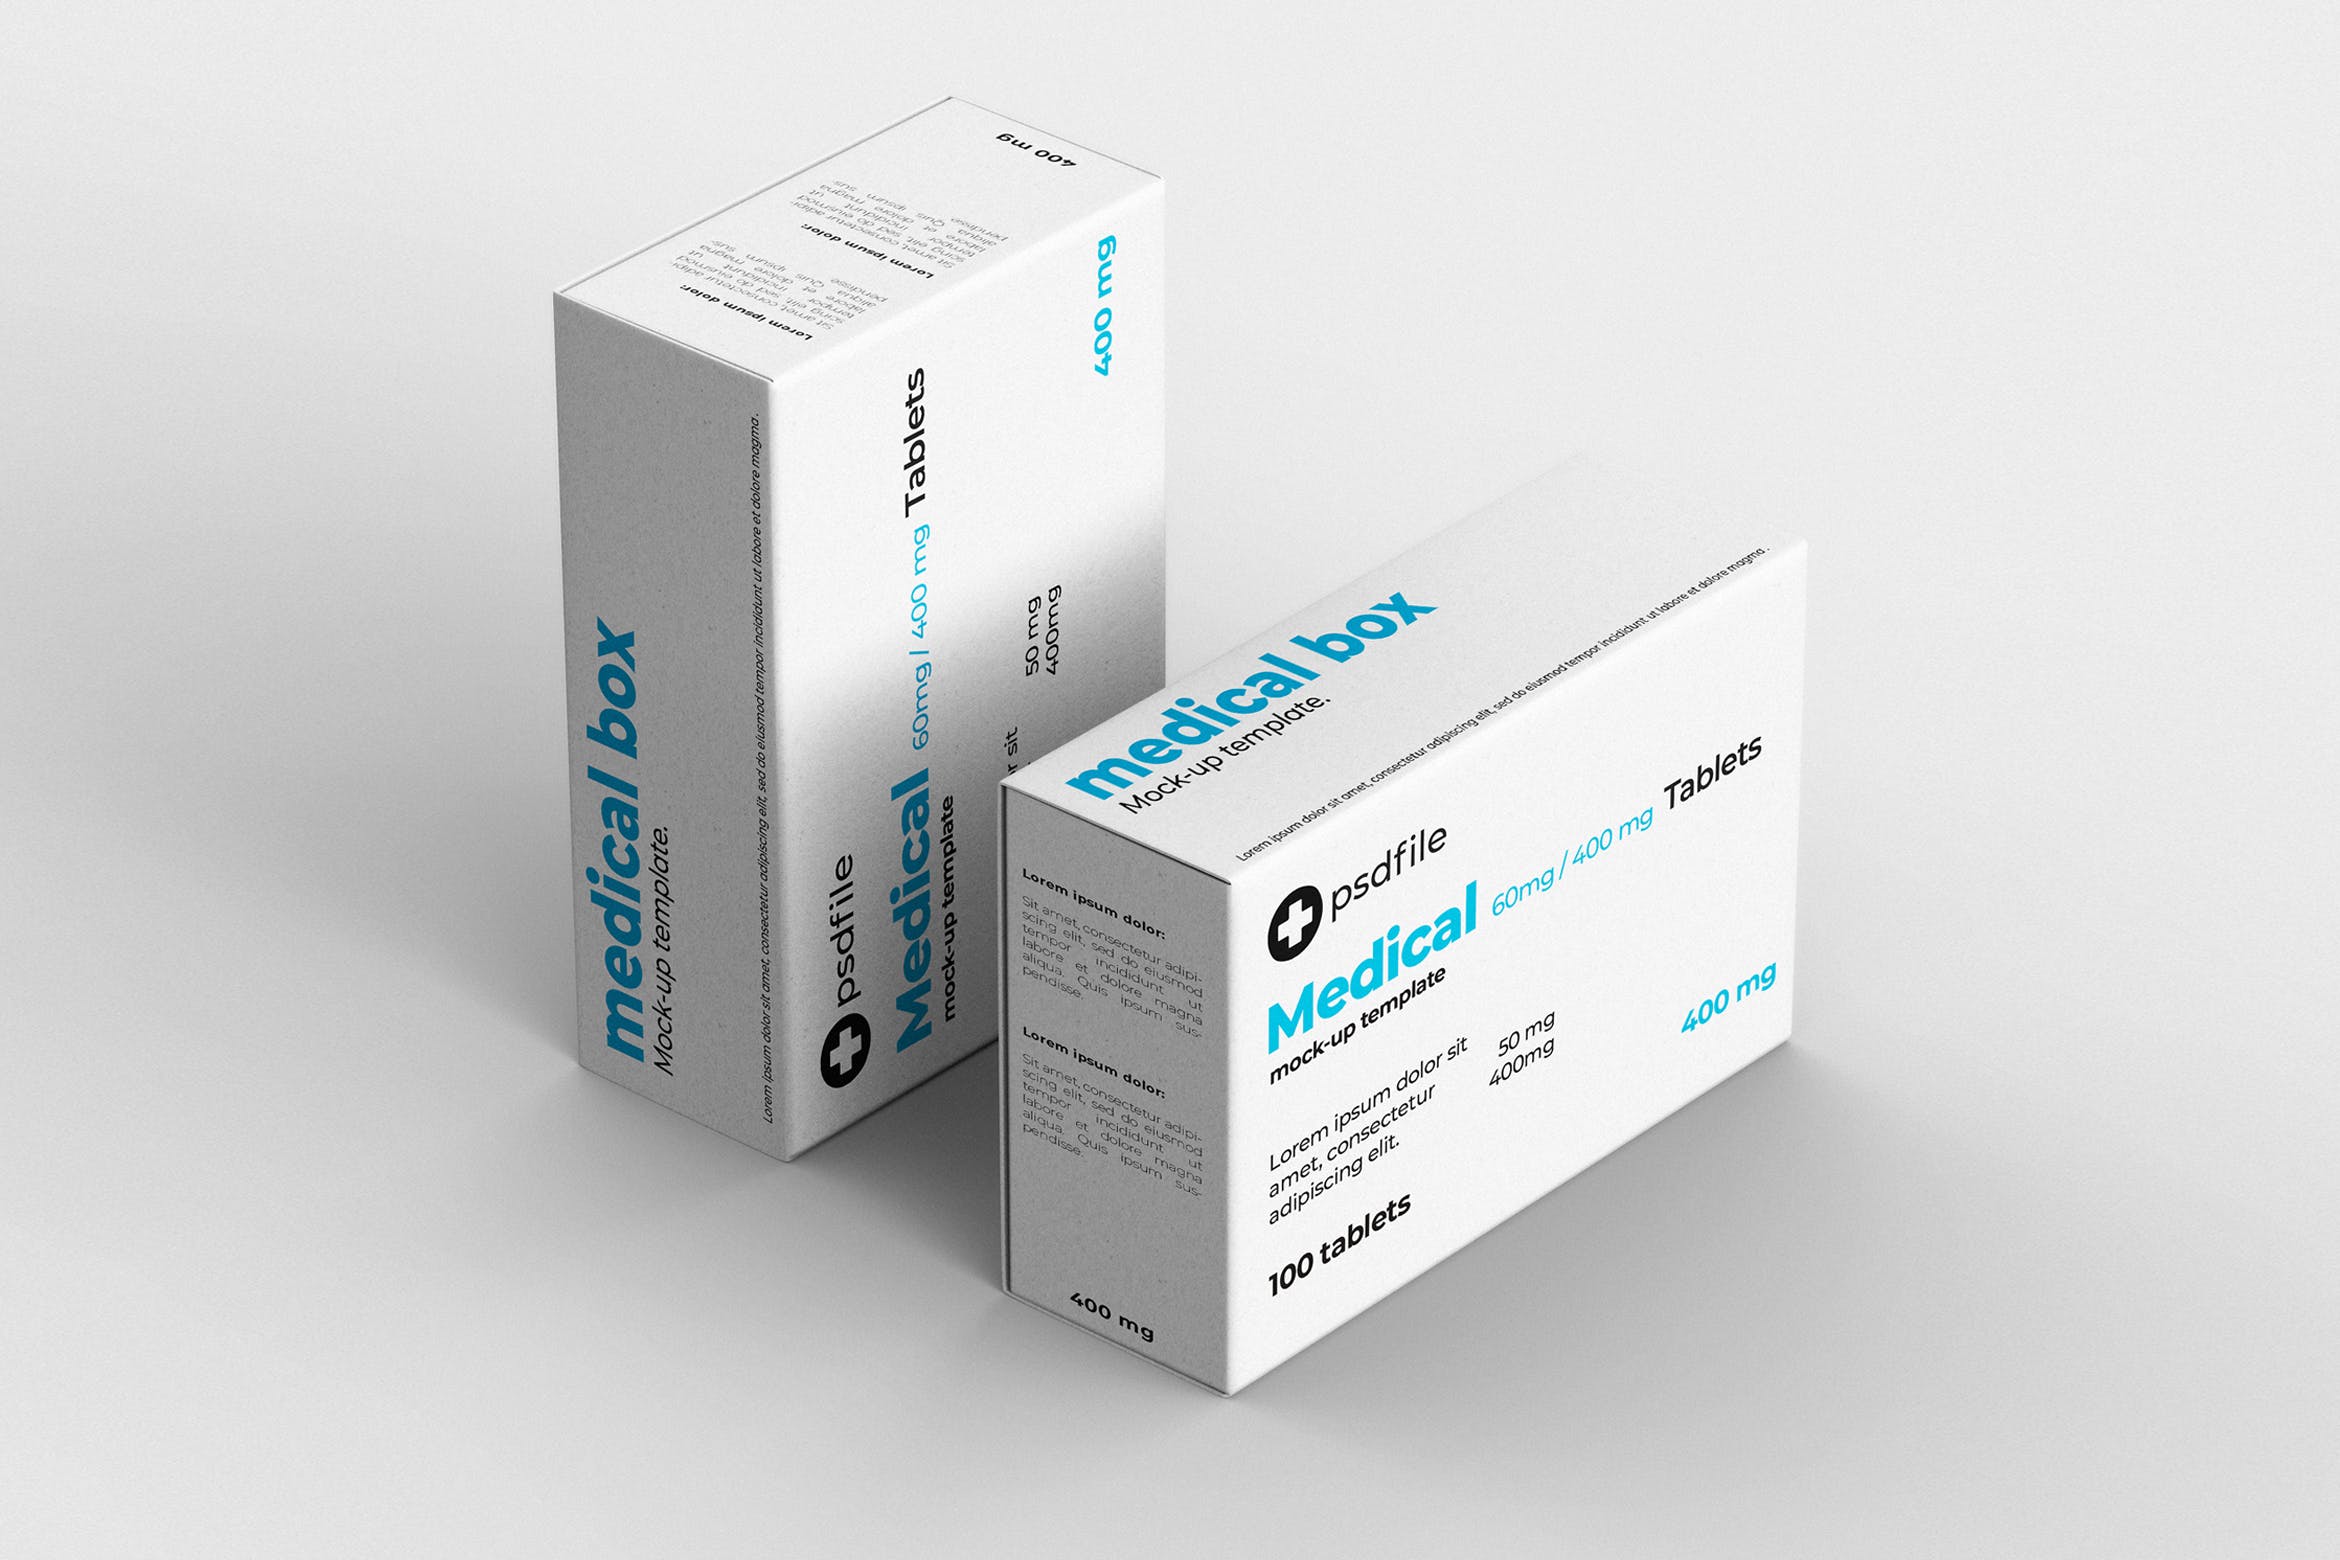 药品包装盒外观设计效果图样机 Medical Box Mock-Up Template插图